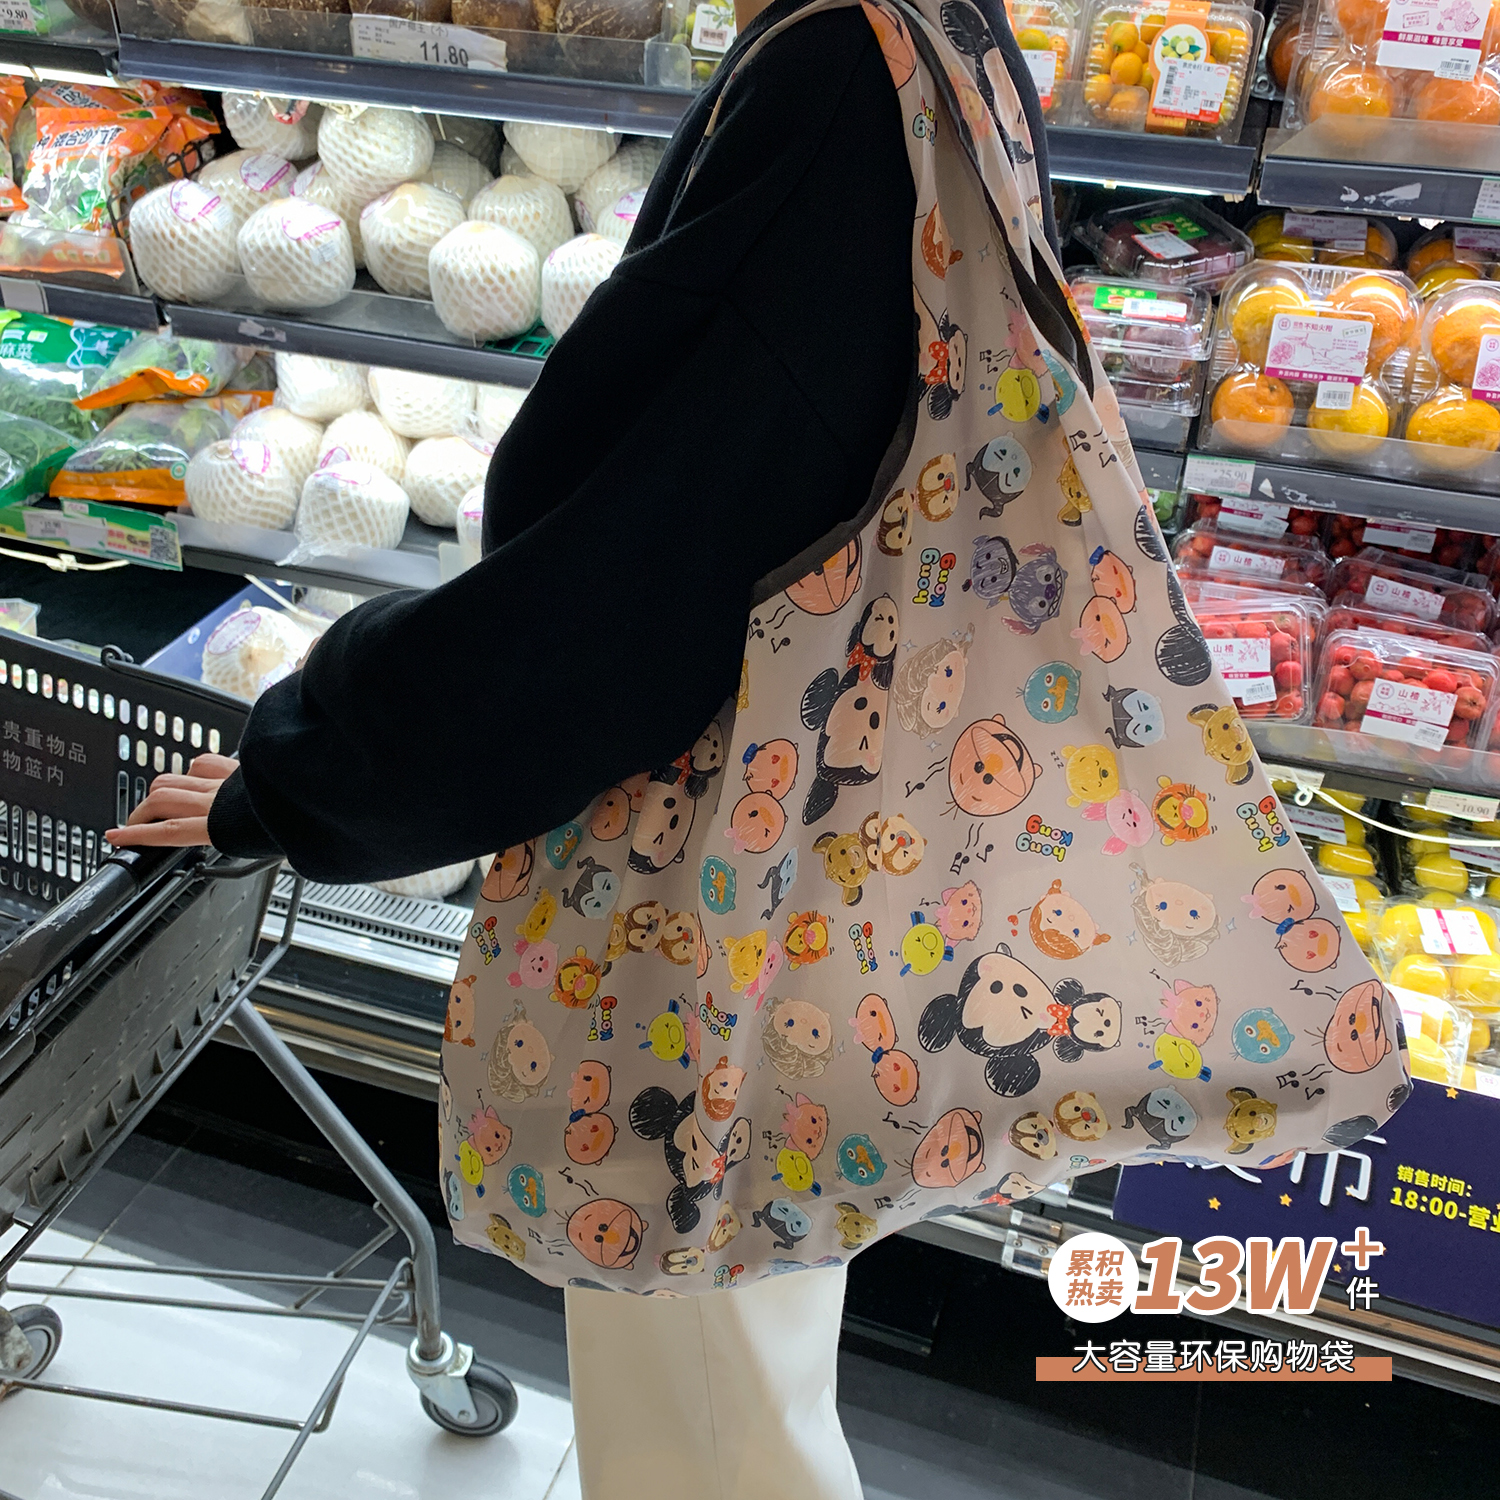 馨帮帮杂货铺 超市环保袋买菜包买菜兜 折叠便携大容量环保购物袋